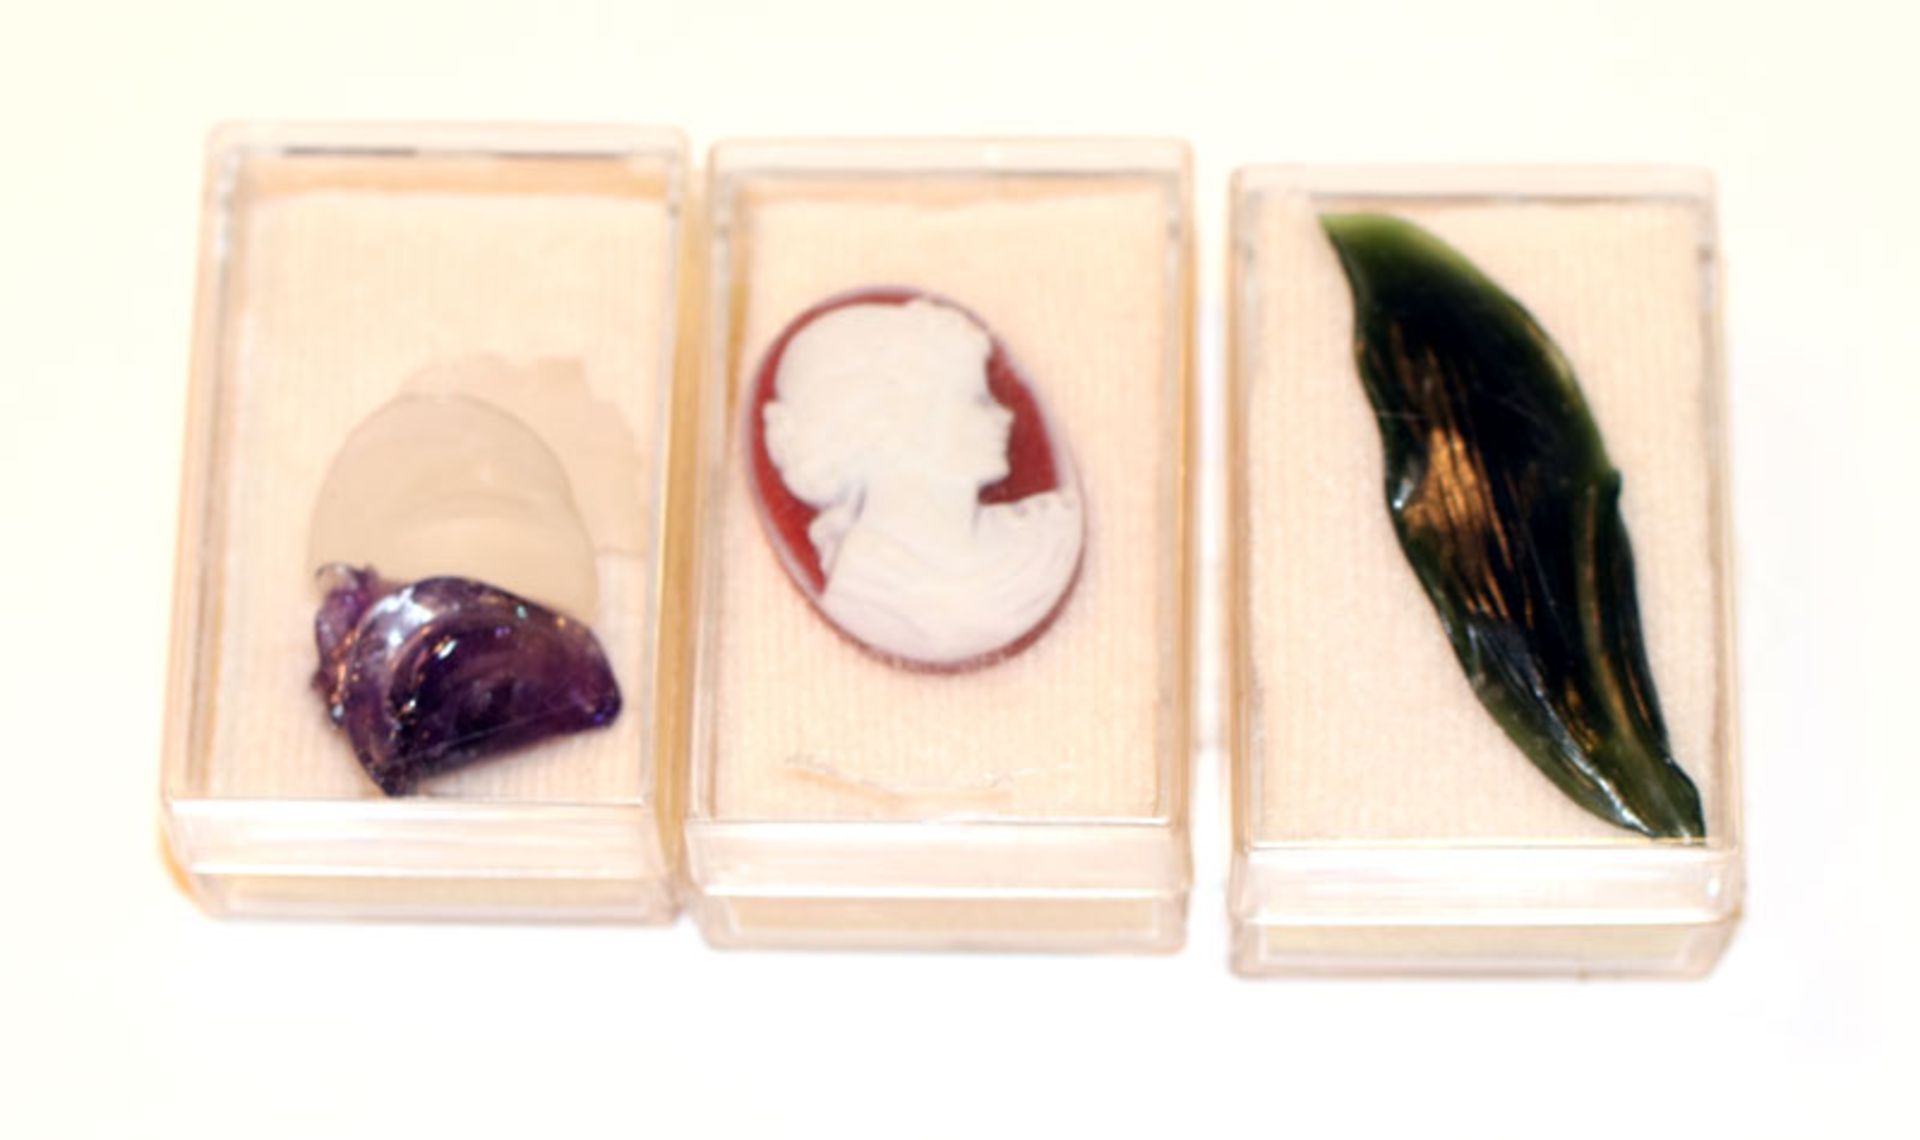 Konvolut: Nephrit Maiglöckchen Blatt, L 5,5 cm, Achat Kamee rot/weiß mit Damenbildnis, und 2